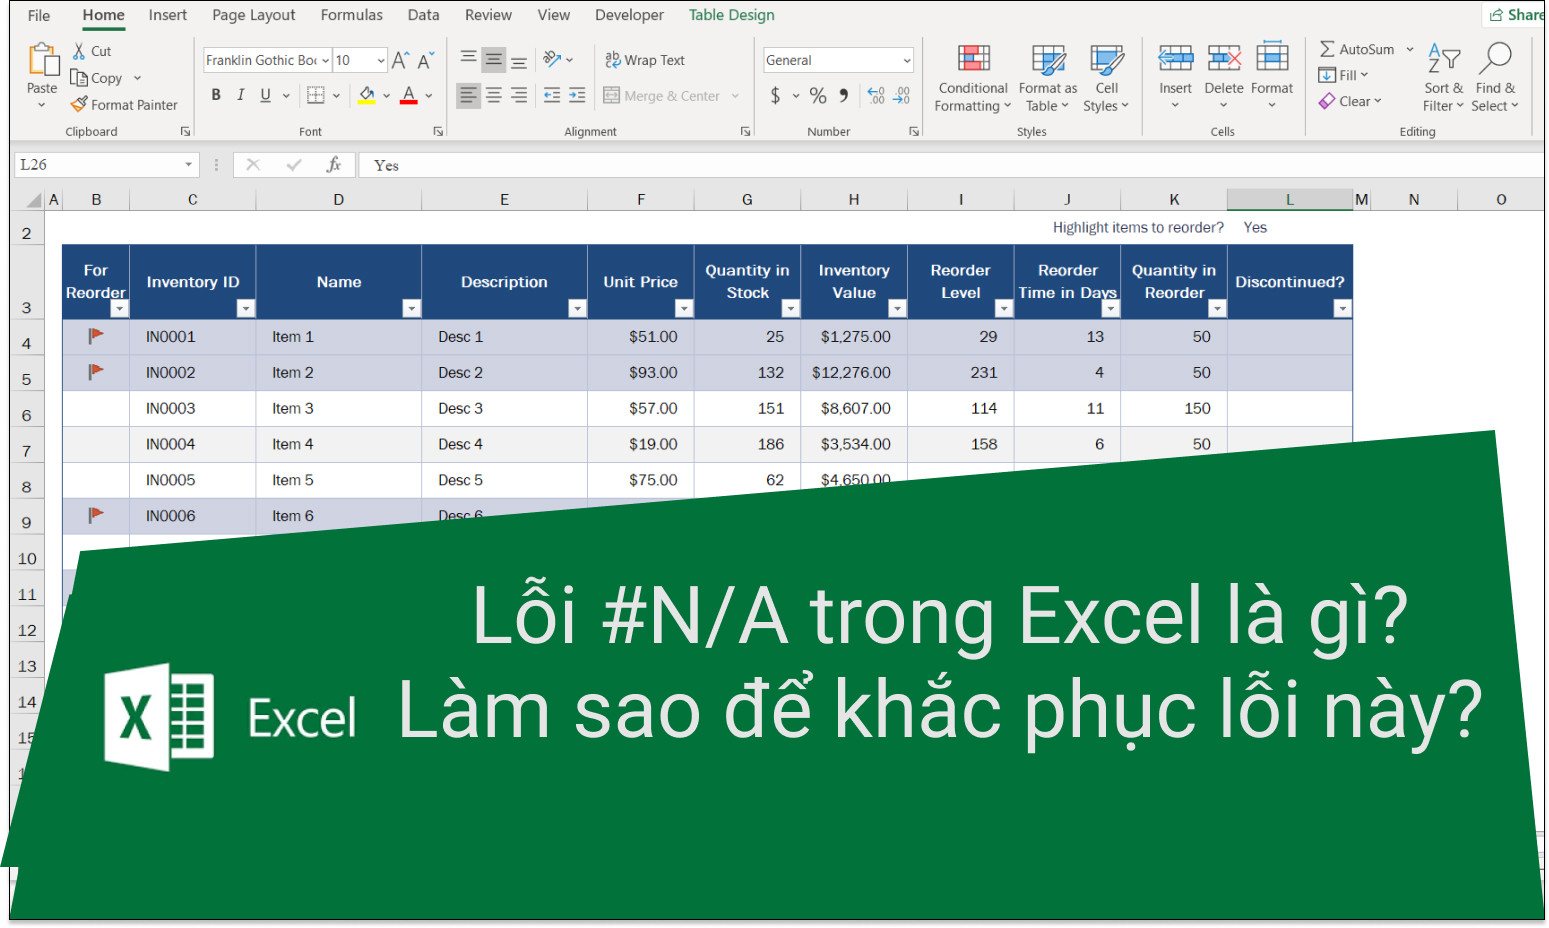 Lỗi #N/A trong Excel có ảnh hưởng gì đến tính toán và phân tích dữ liệu không?